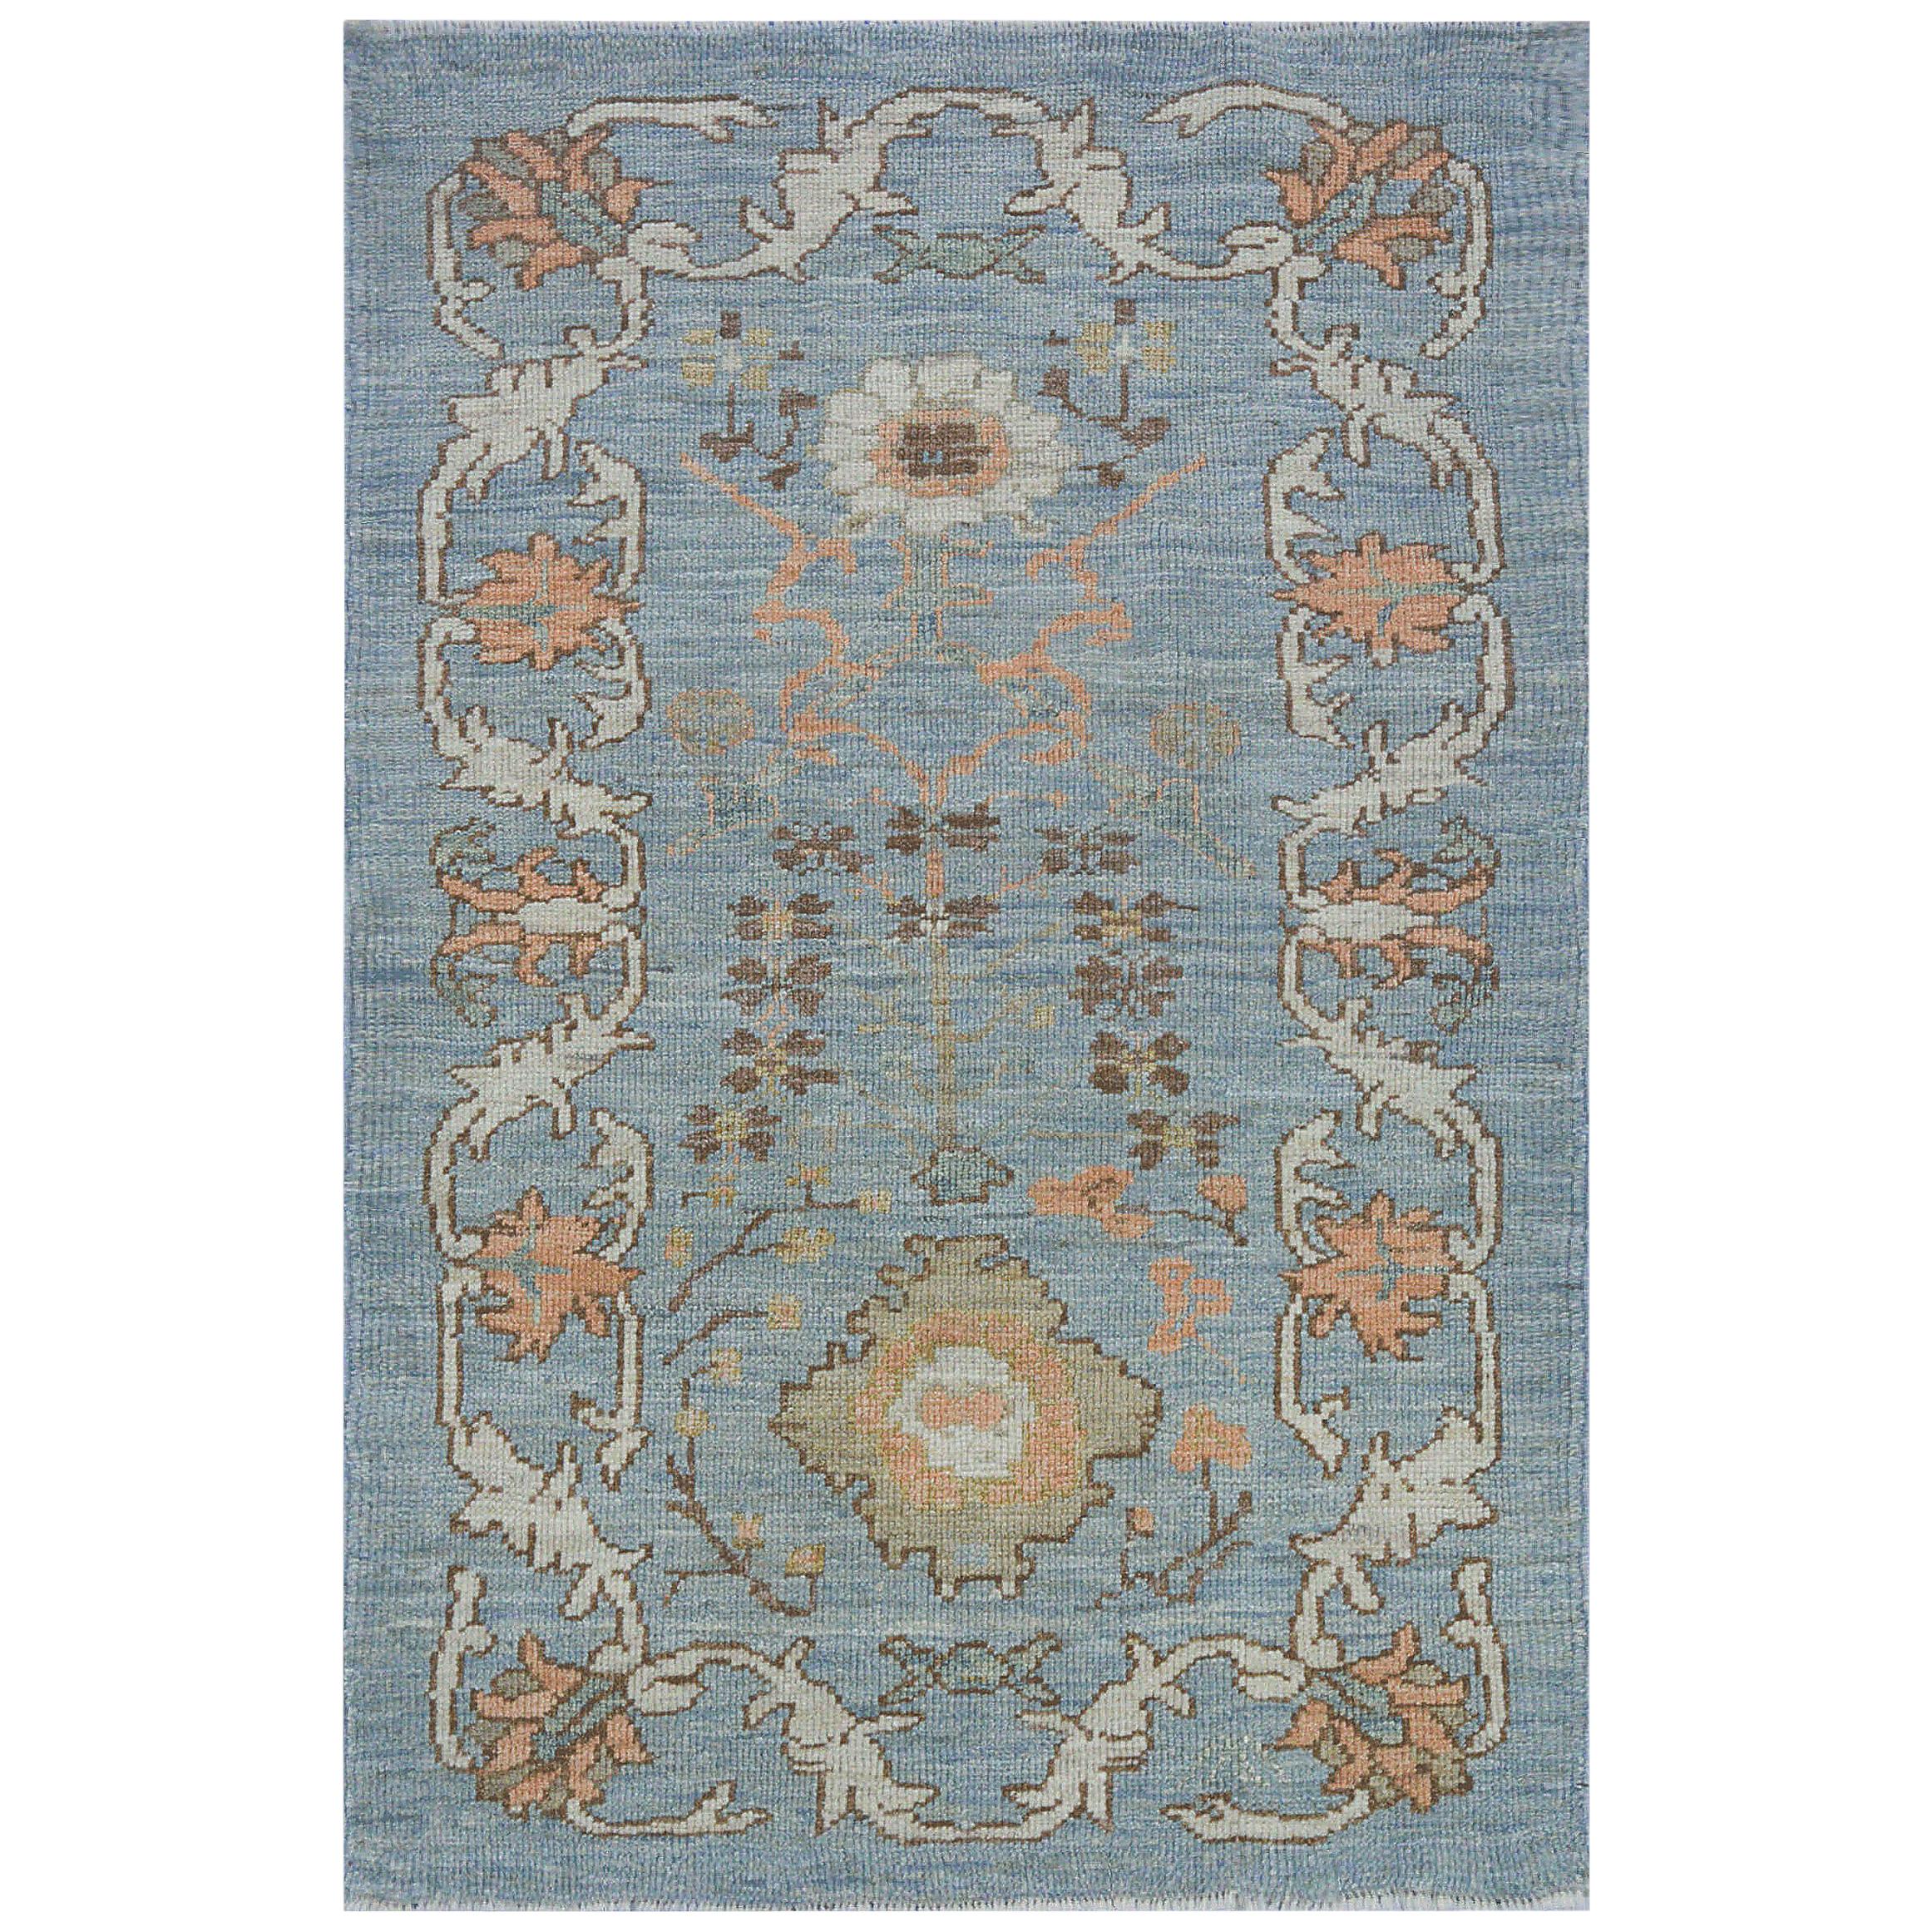 Moderner moderner Oushak-Teppich in Blau mit floralen Motiven in Elfenbein, Rosa und Braun